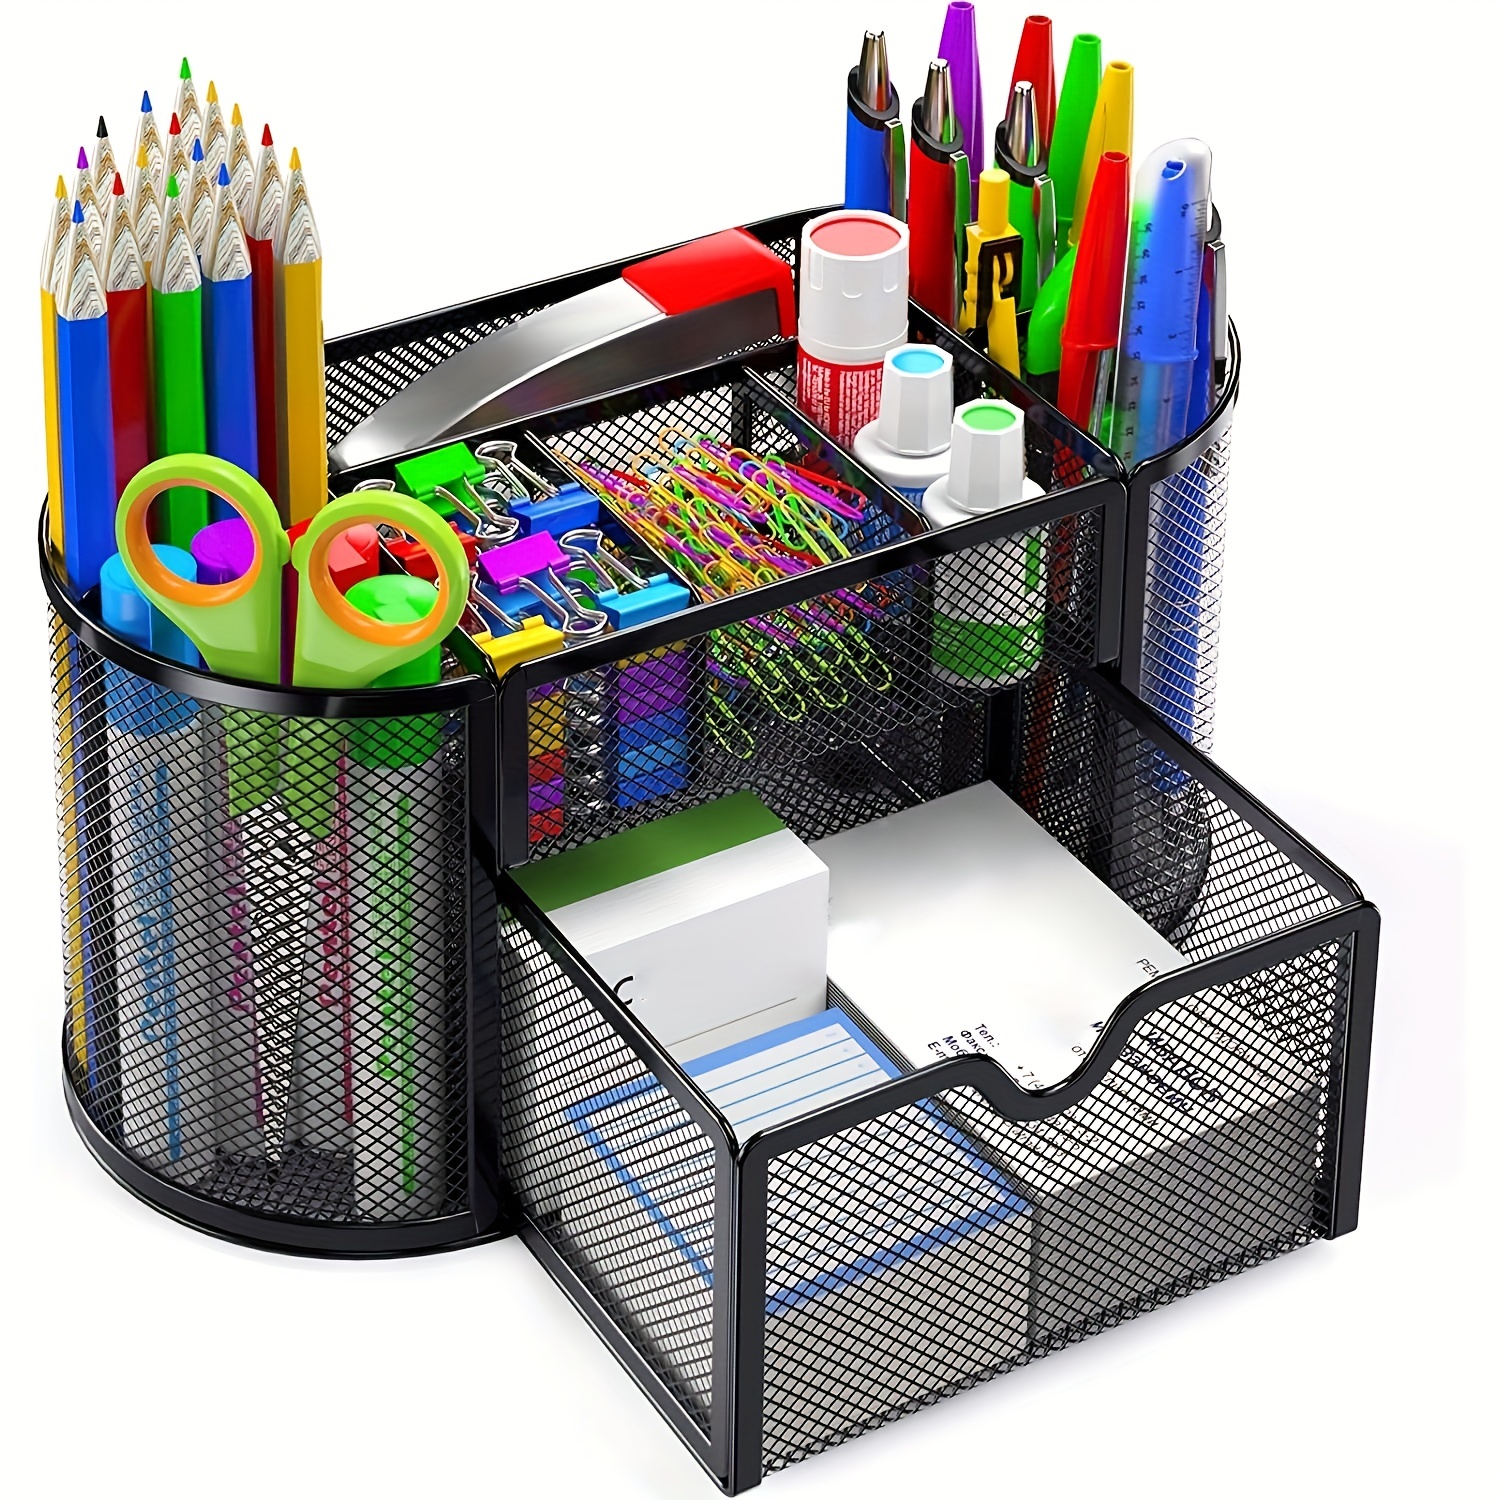 Storage Desk pencil holder storage organizer home office desk accessories  stationery organizer Pen storage box desktop Organizer